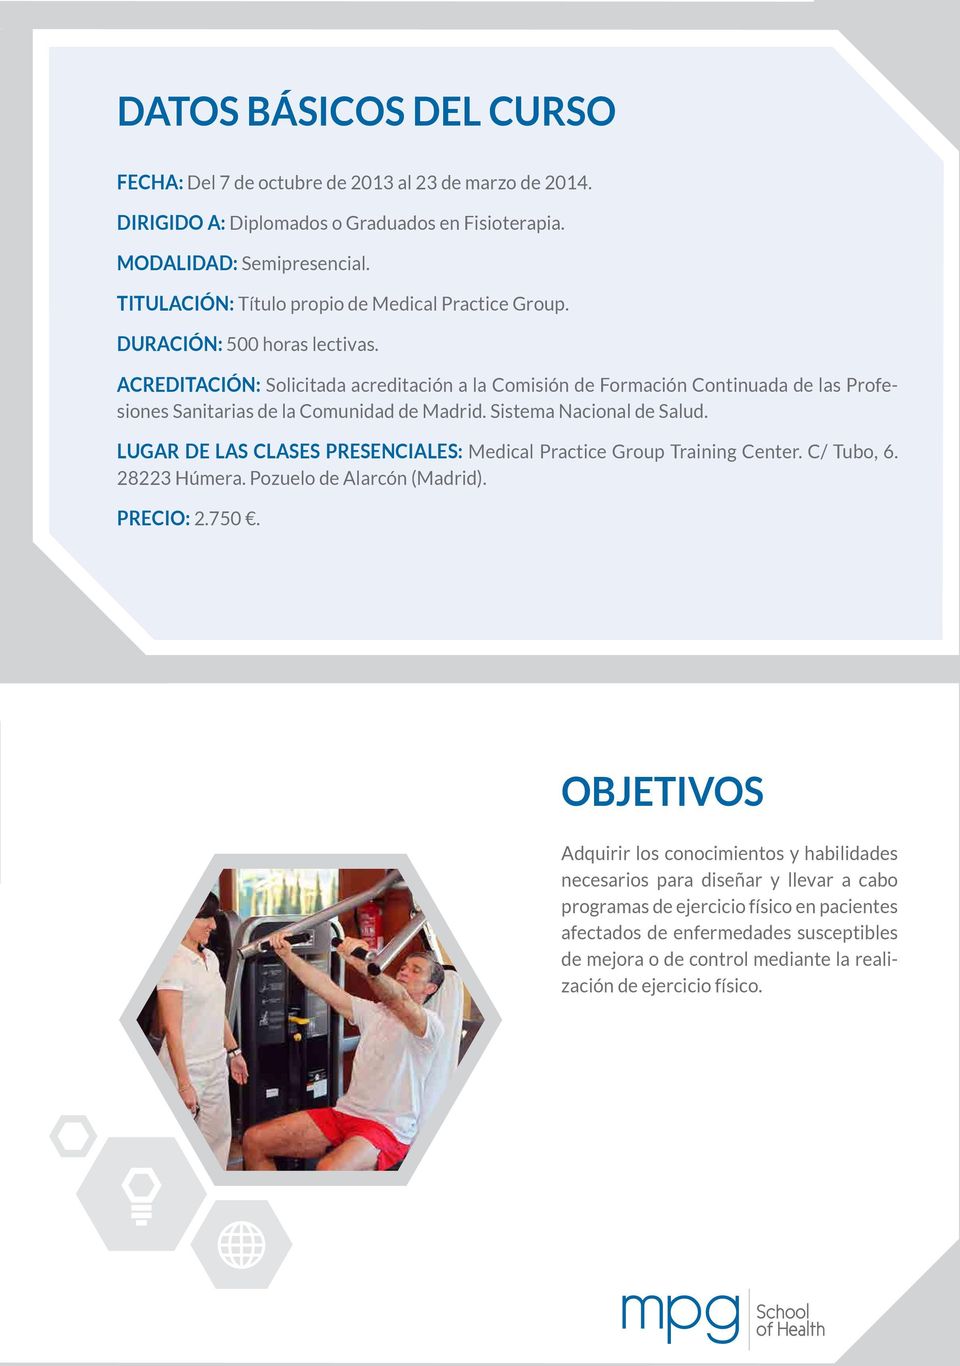 ACREDITACIÓN: Solicitada acreditación a la Comisión de Formación Continuada de las Profesiones Sanitarias de la Comunidad de Madrid. Sistema Nacional de Salud.